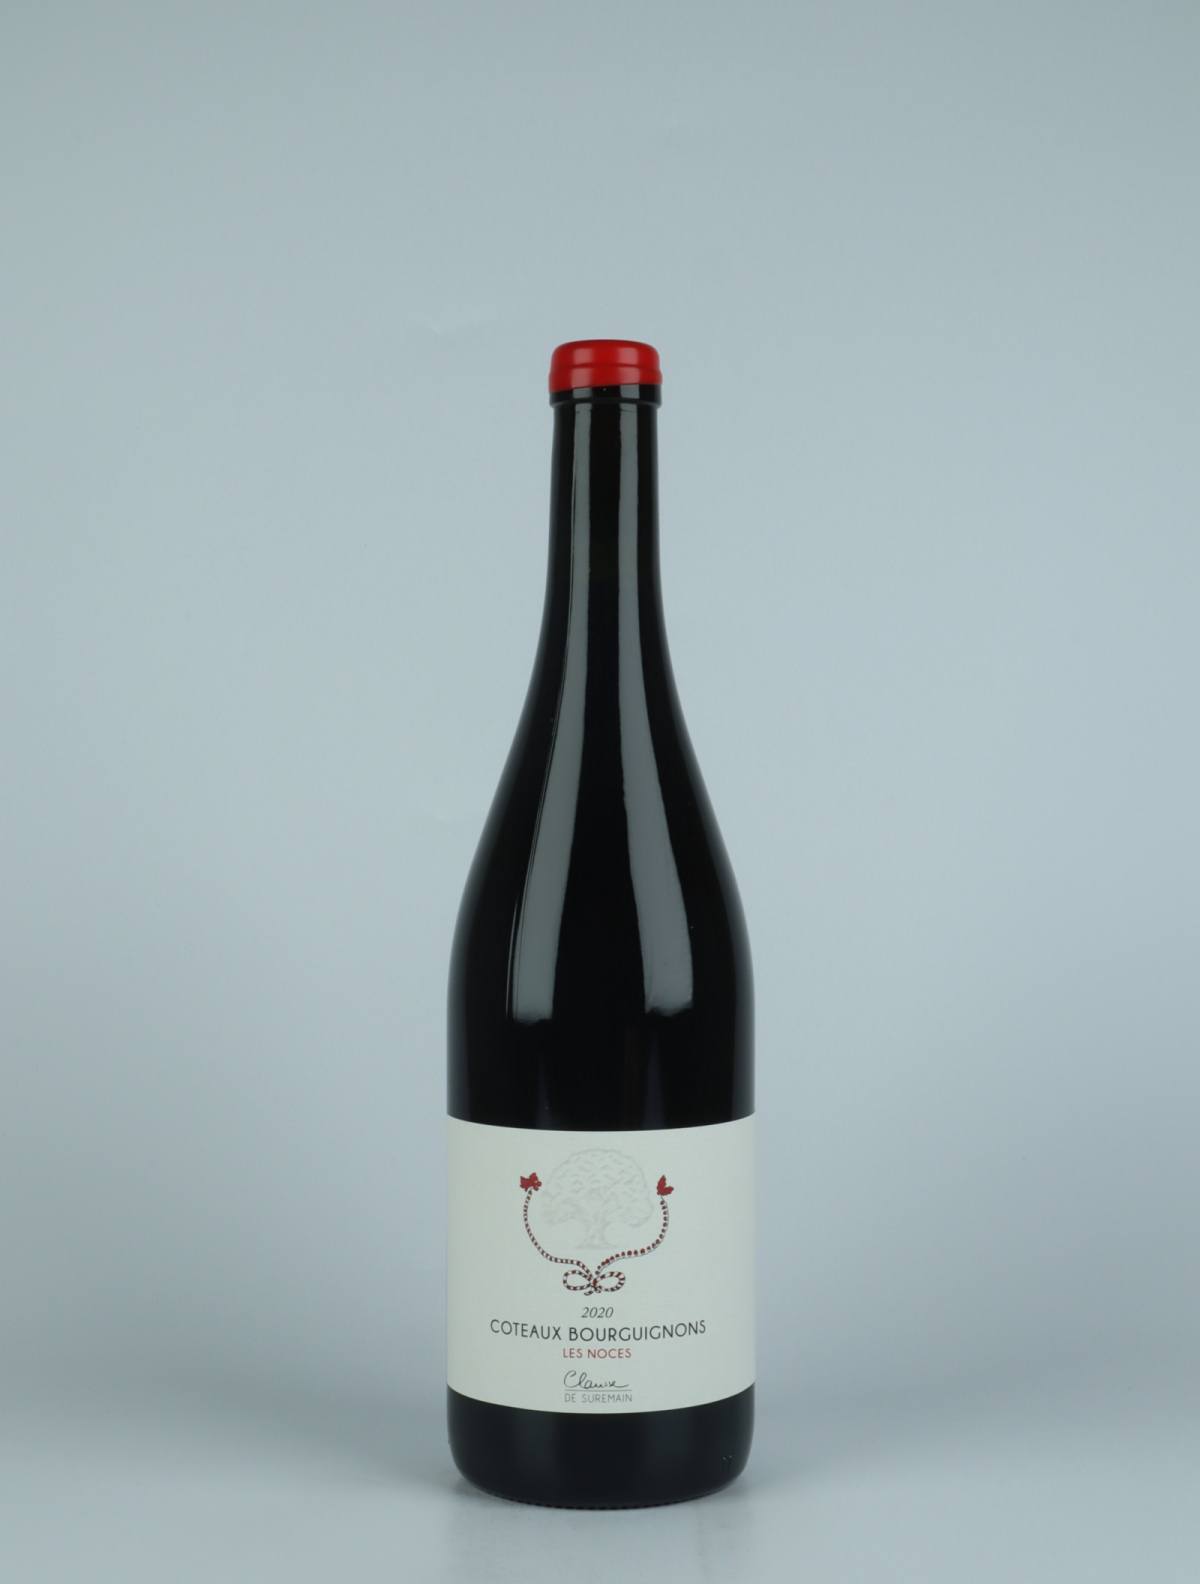 En flaske 2020 Côteaux Bourguignons - Les Noces Rødvin fra Clarisse de Suremain, Bourgogne i Frankrig